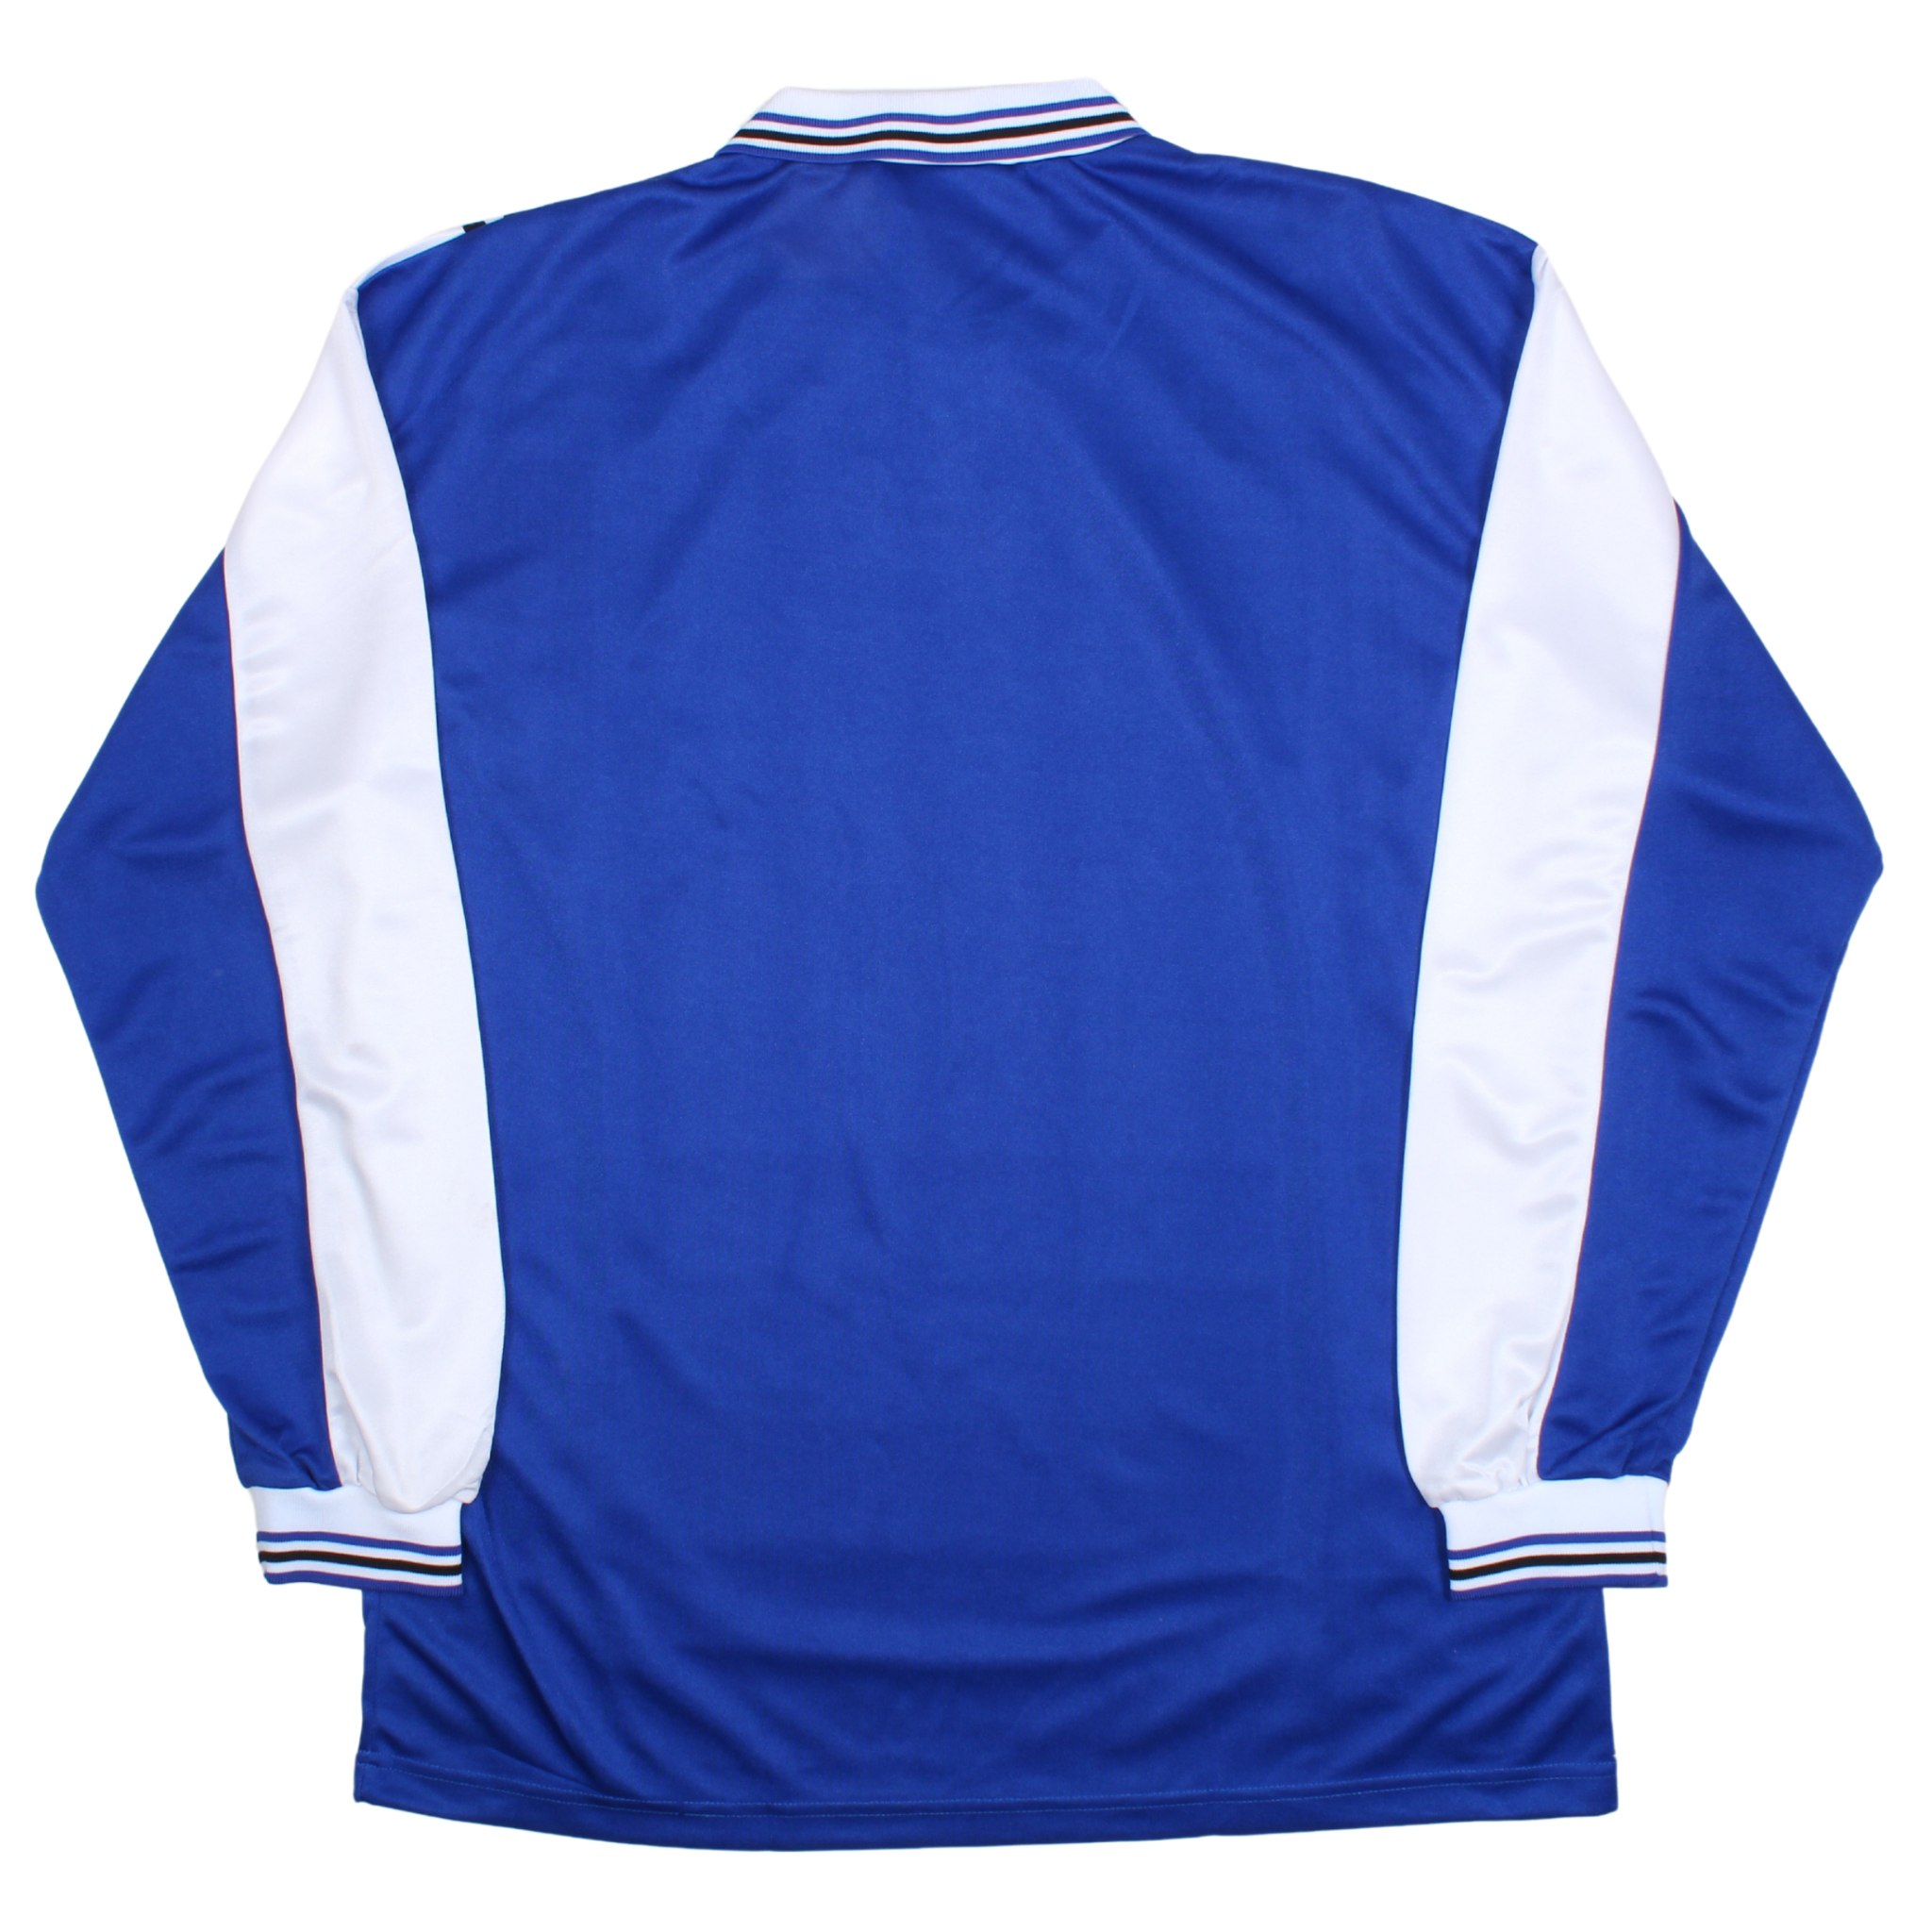 Vintage Adidas Football Shirt (L) BNWT